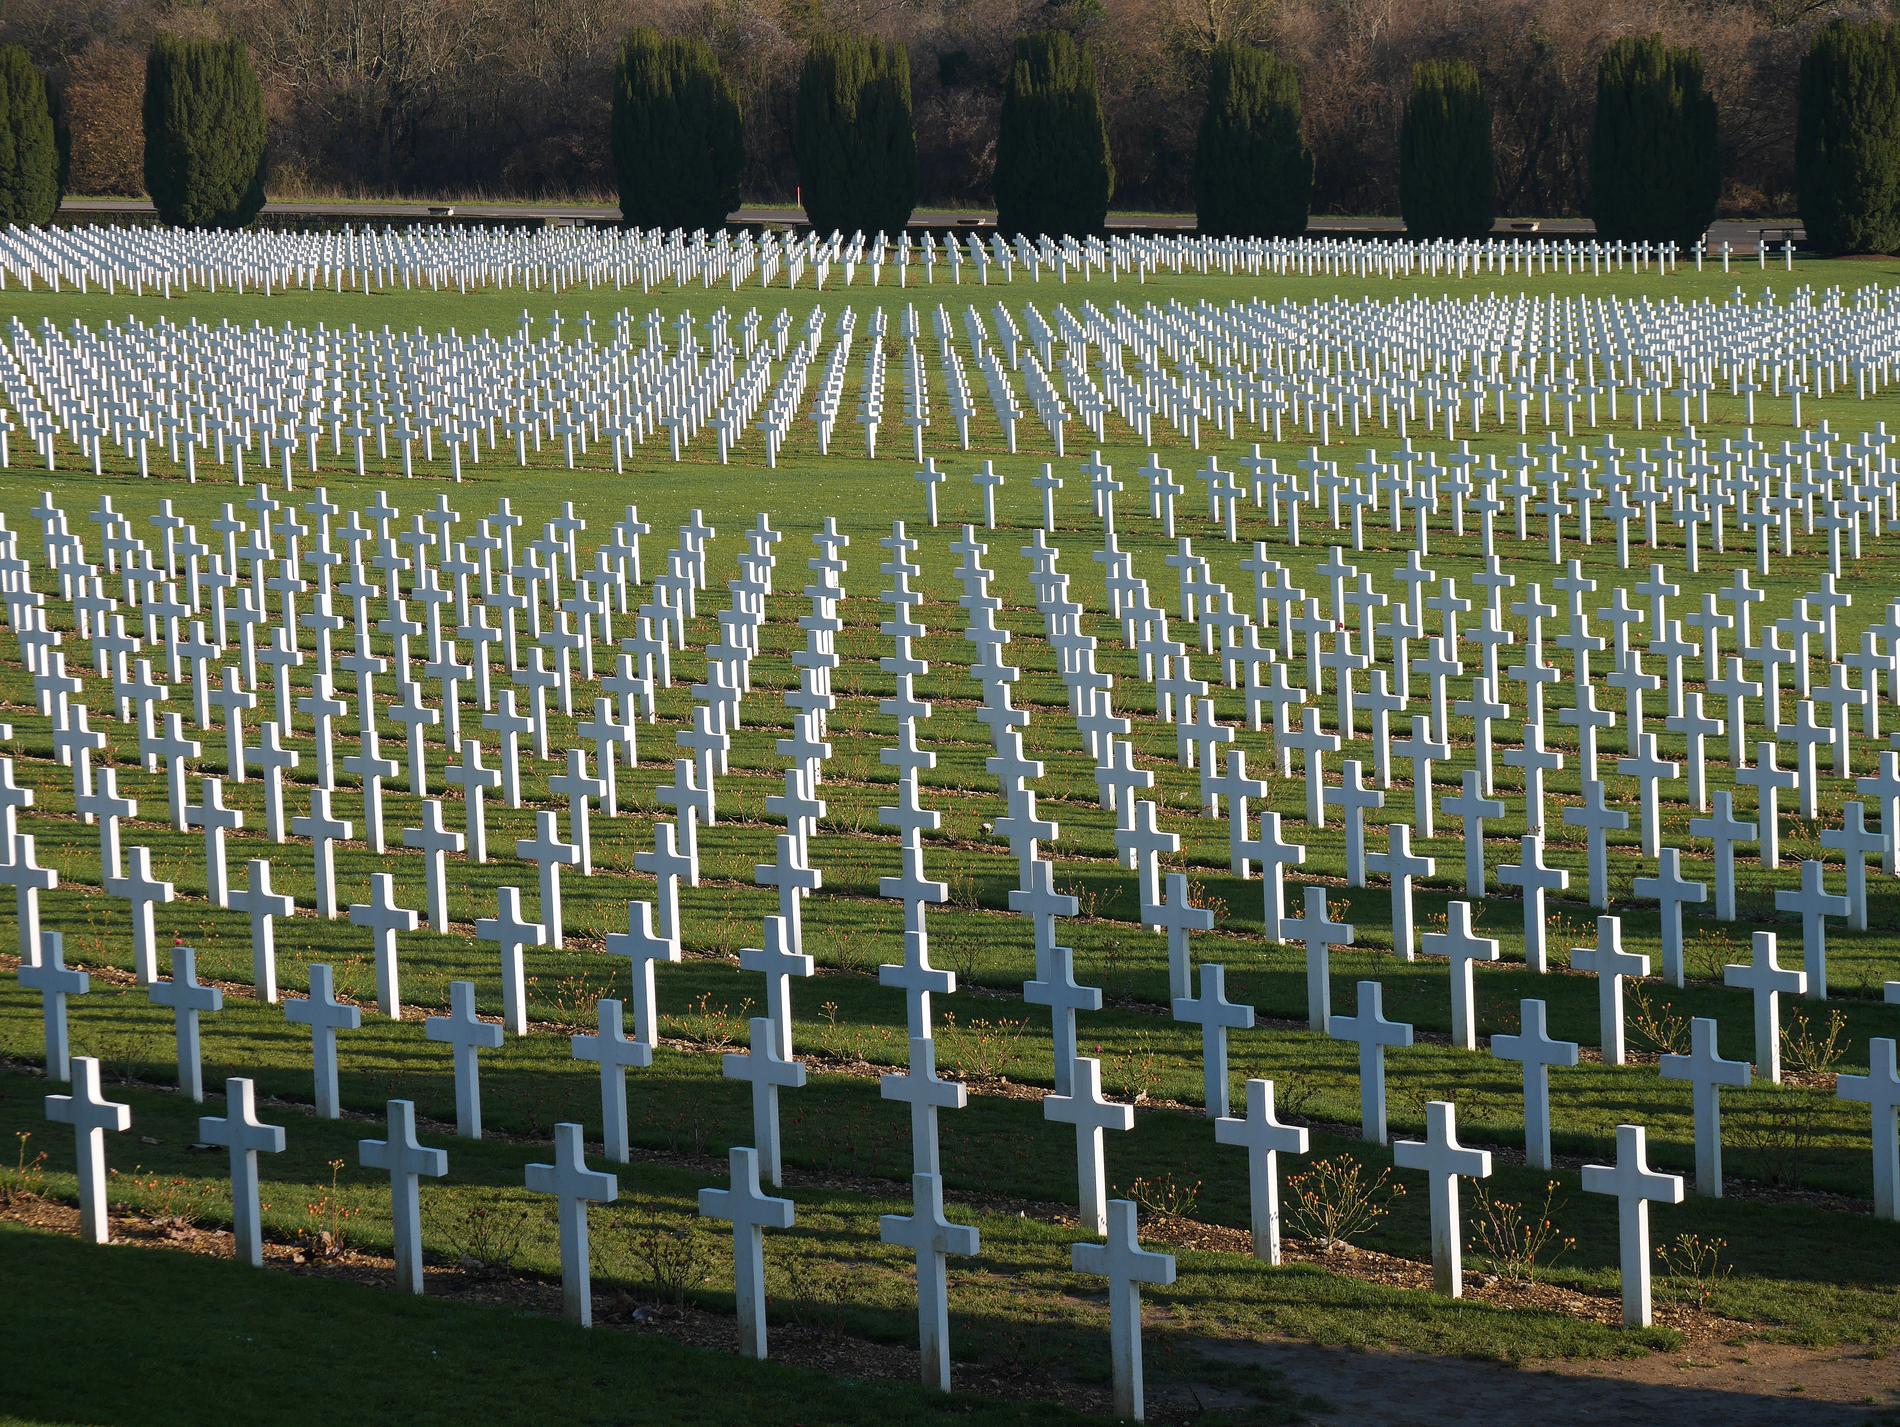 Drygt 300 000 soldater stupade i slaget om Verdun 1916. I dag är slagfältet fullt med gravar. Arkivbild.